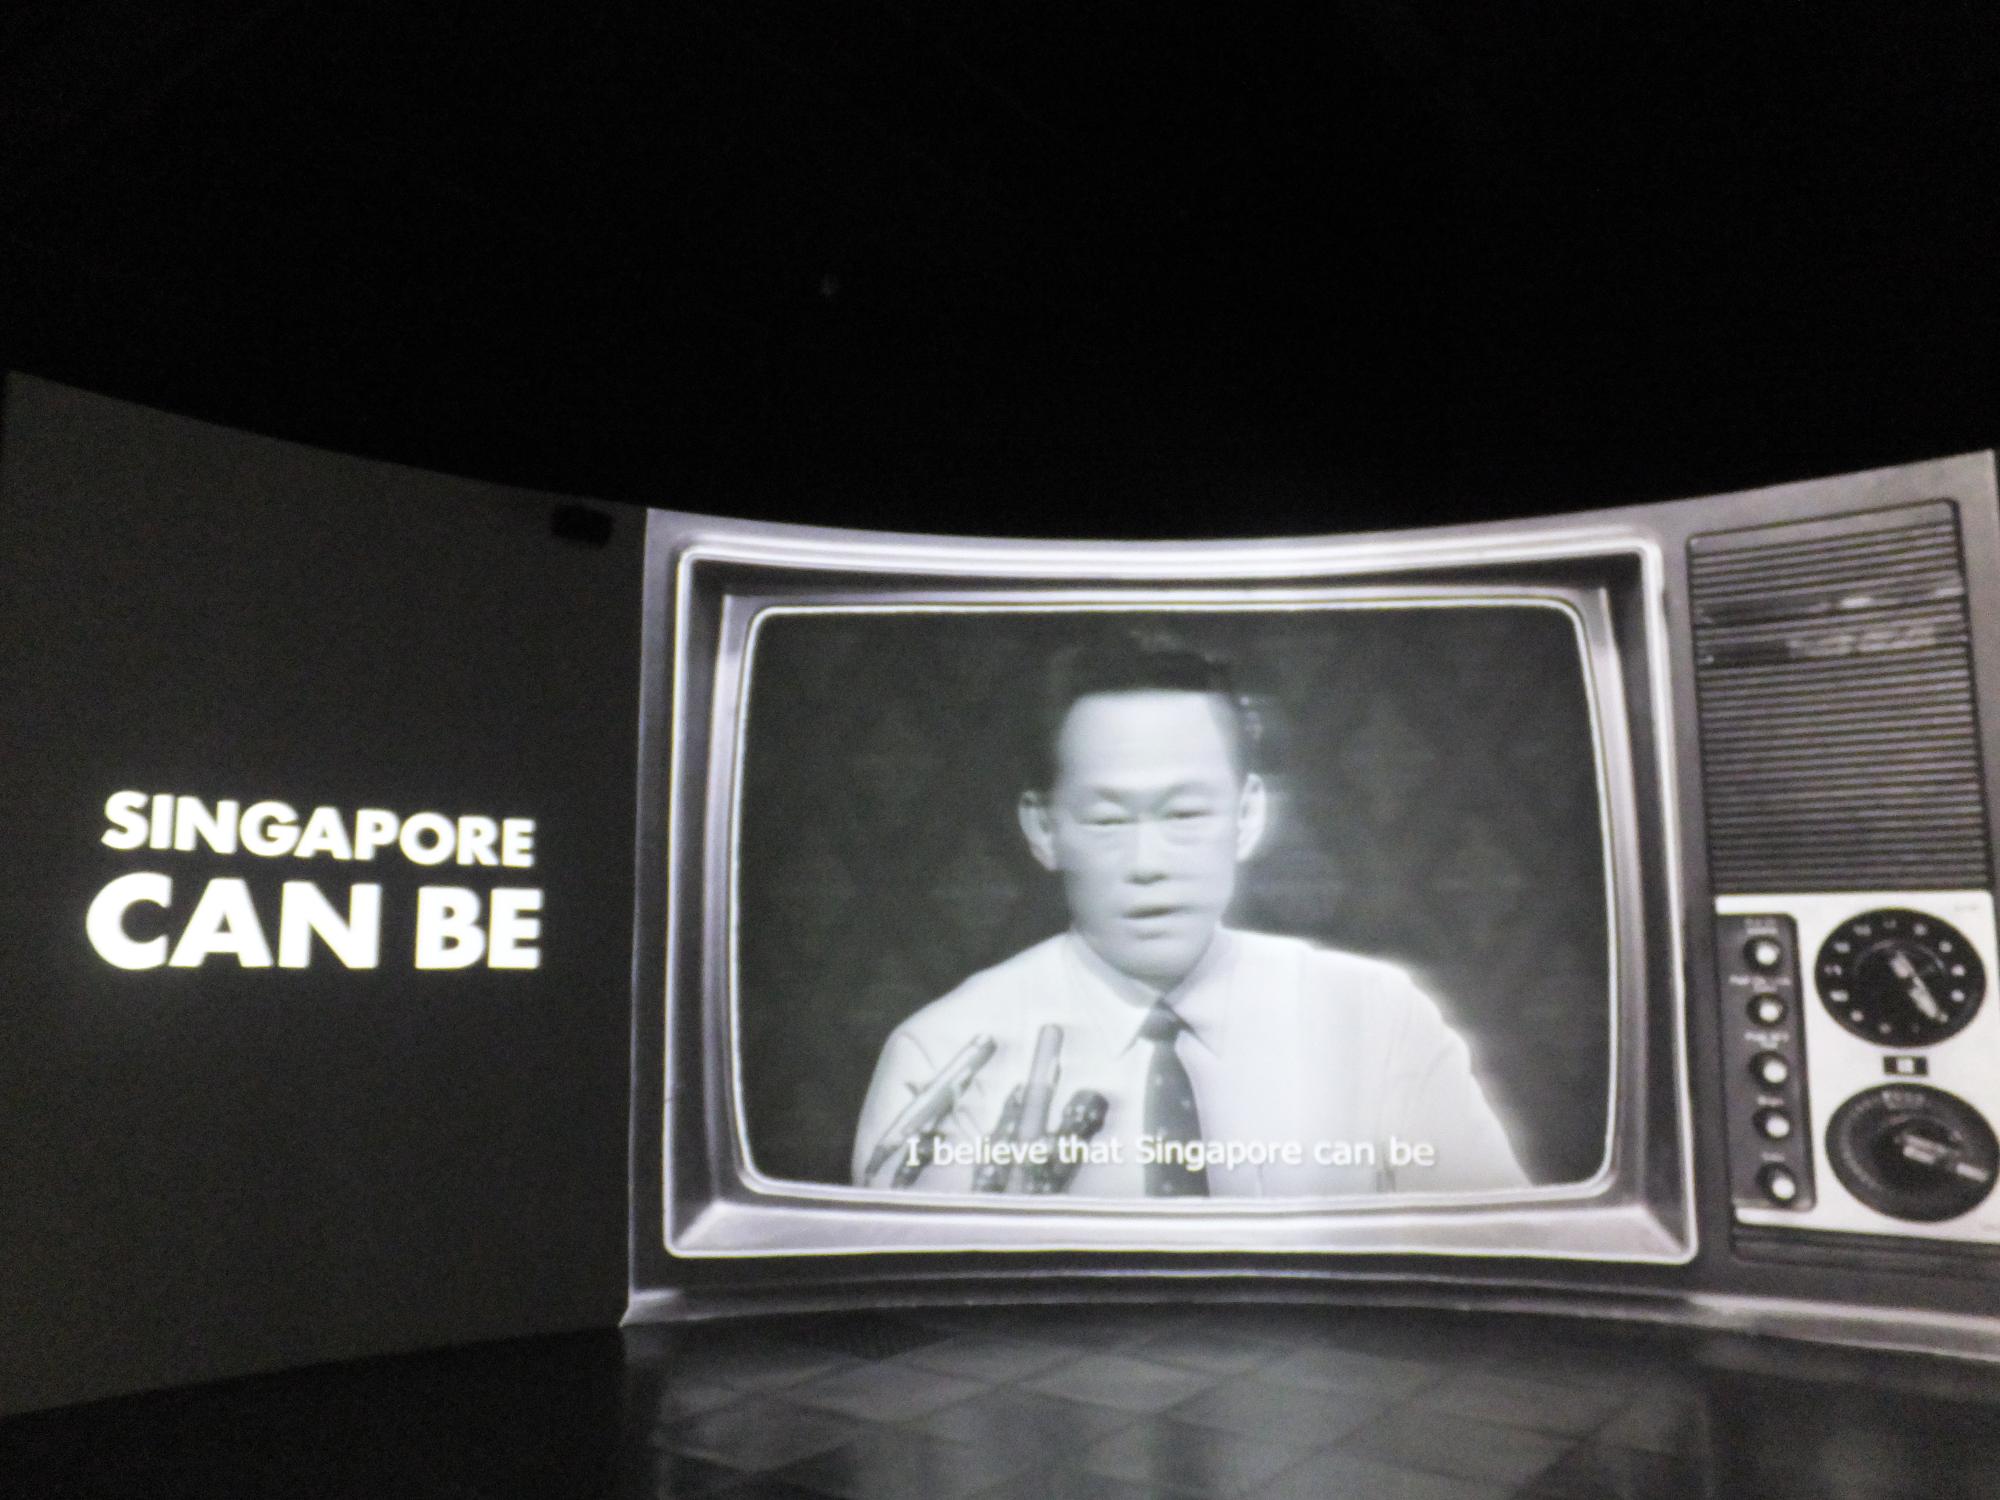 「SINGAPORE CAN BE」という文字と、古いテレビに男性が映っている写真